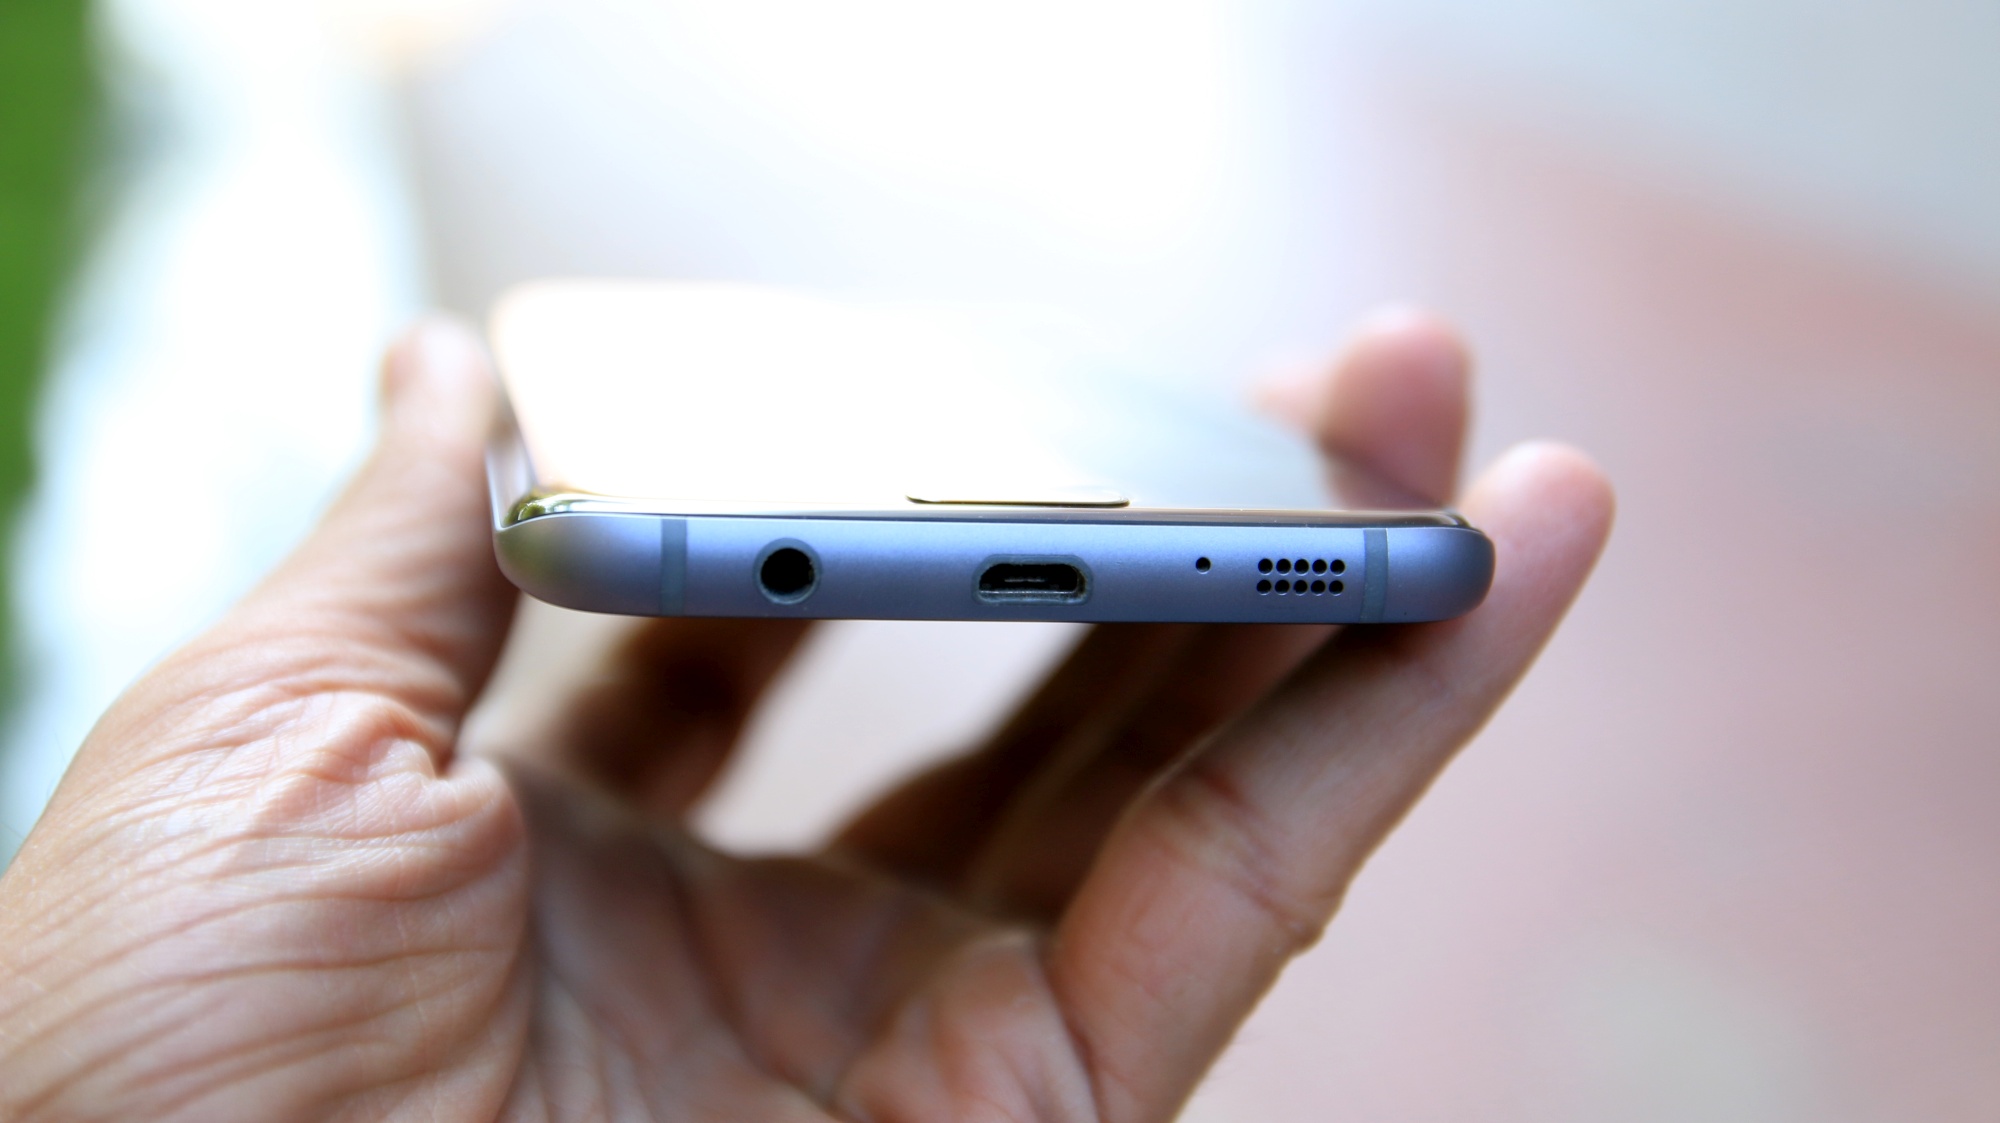 Χωρίς υποδοχή 3.5mm για ακουστικά το Samsung Galaxy S8;